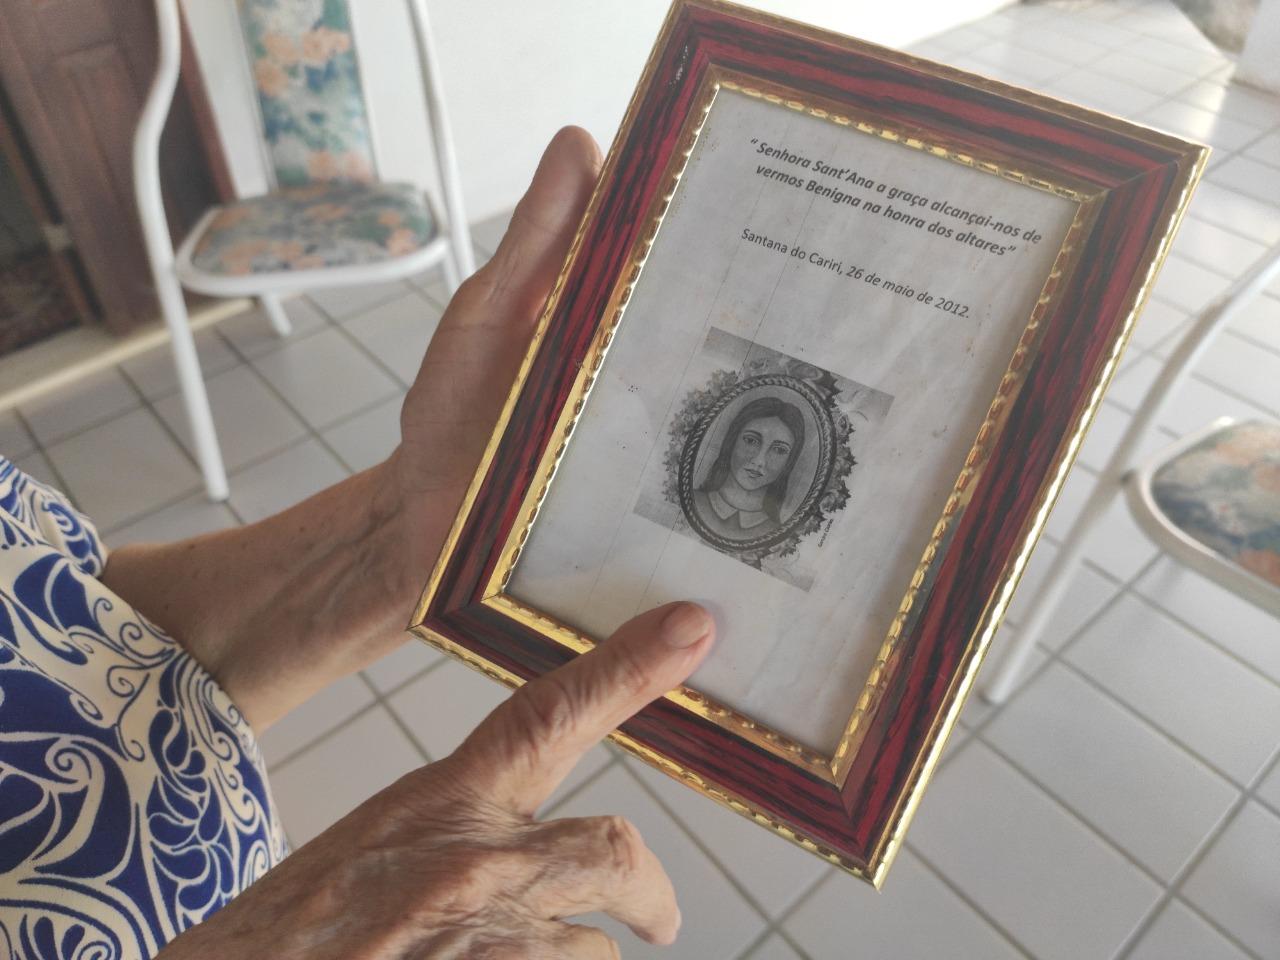 Iranir Oliveira, irmã de criação de Benigna, mantém lembranças da santa popular